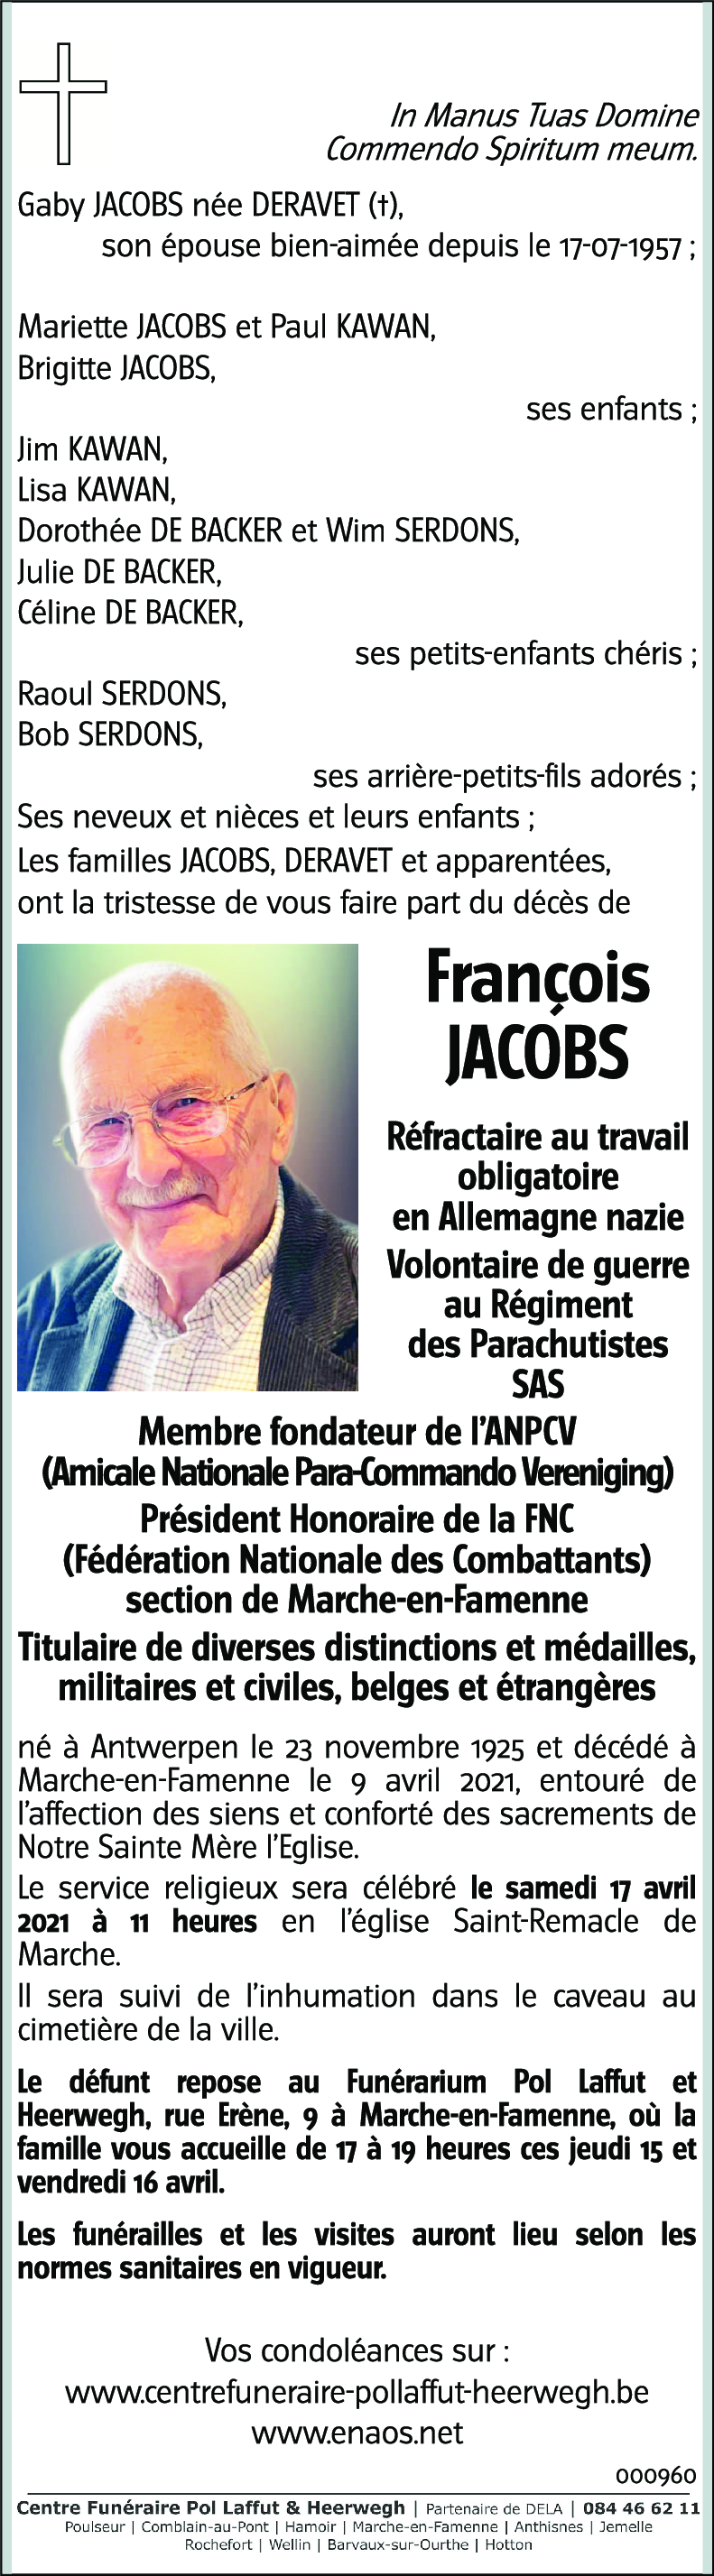 François JACOBS